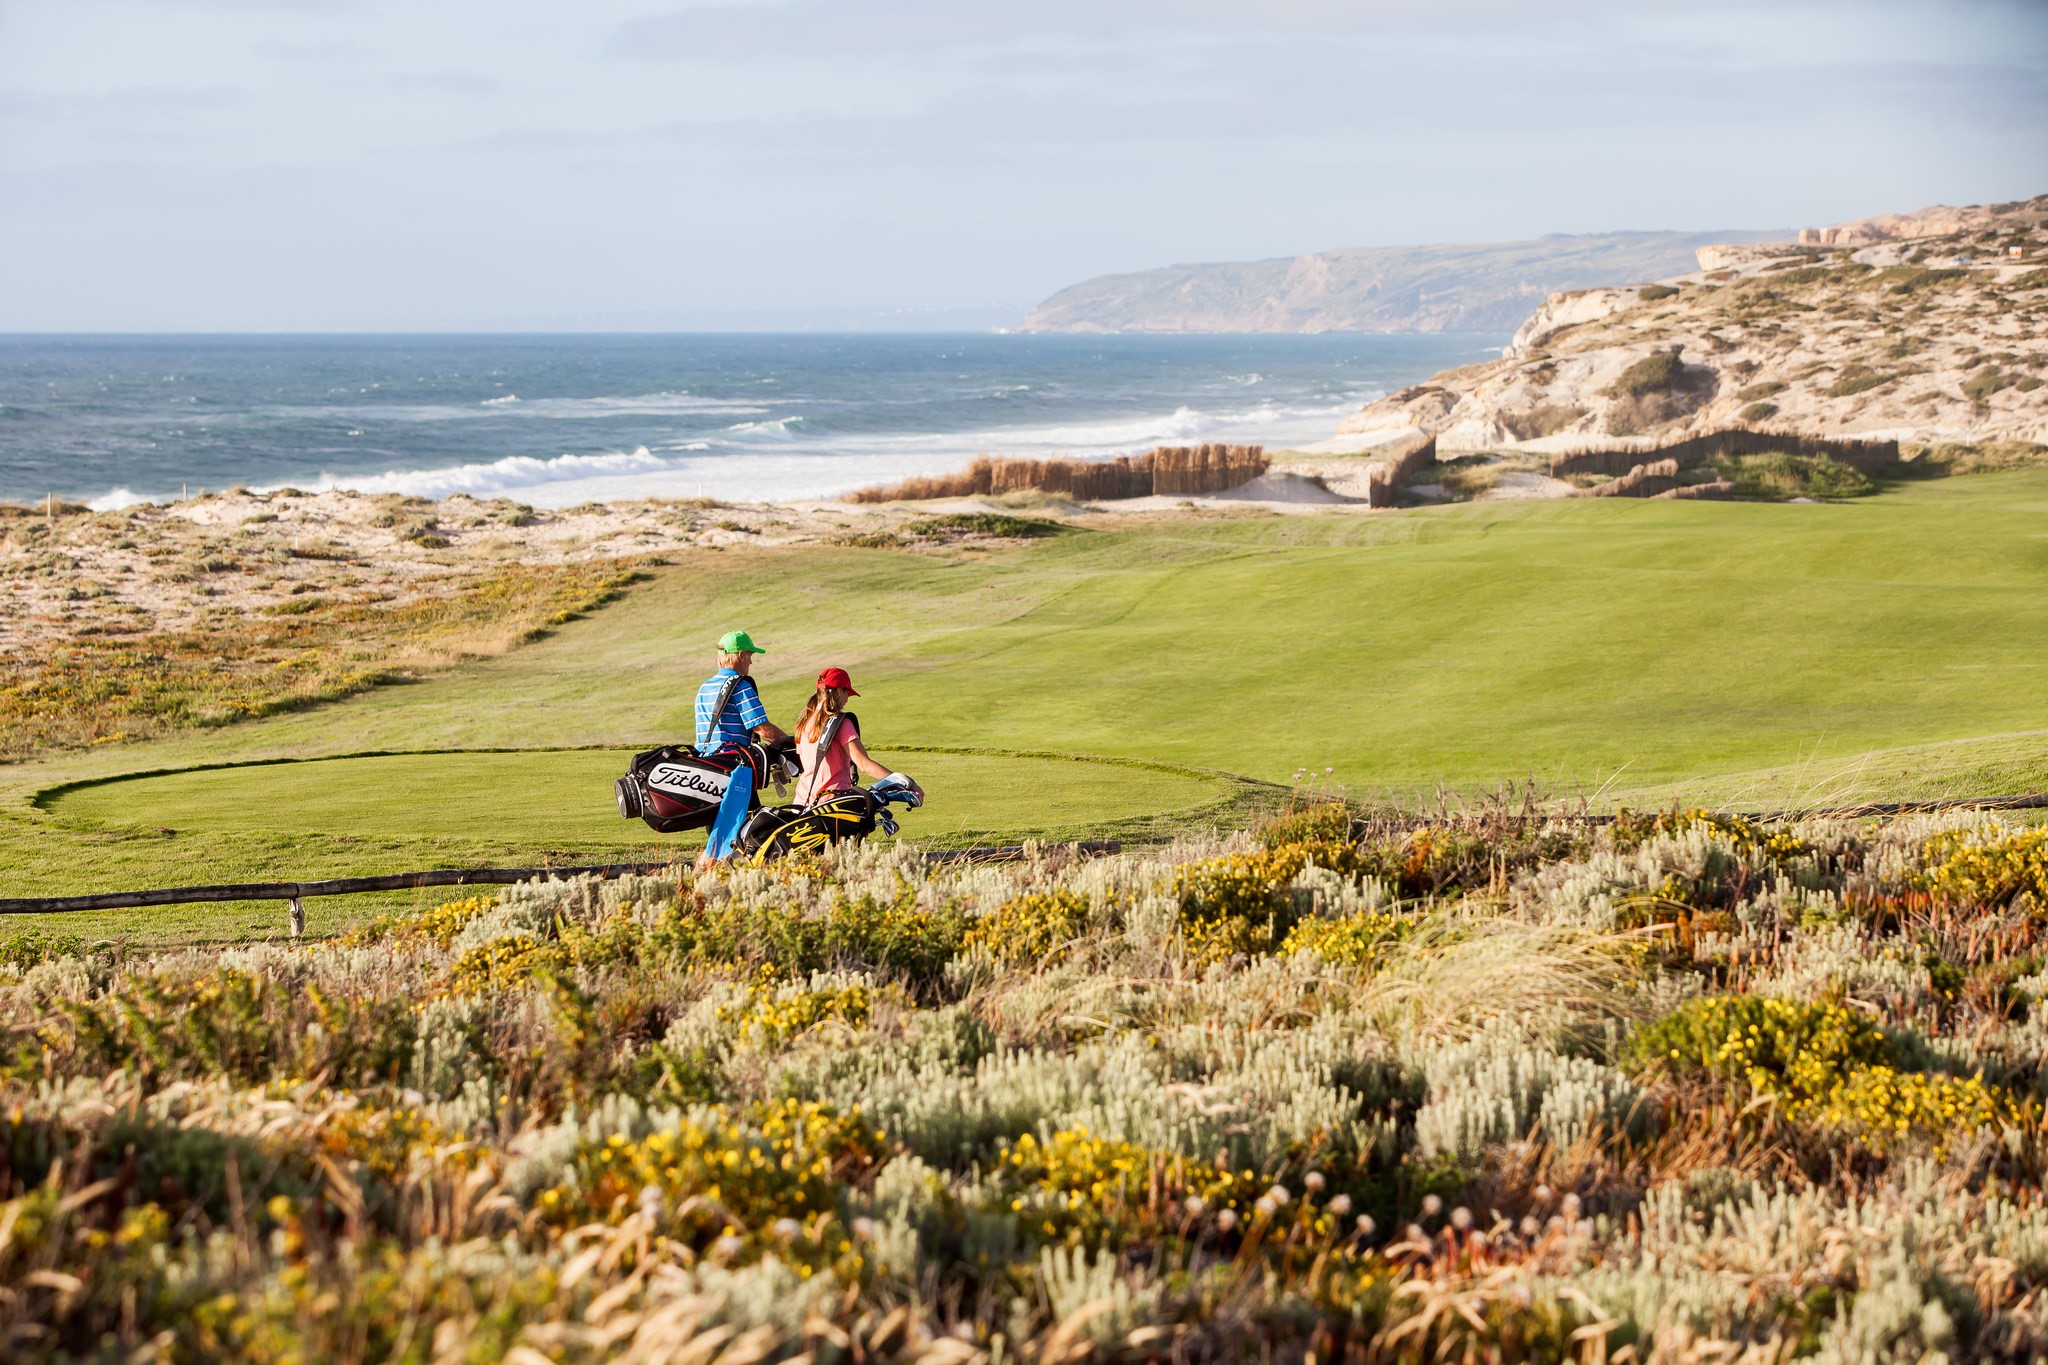 Praia D’El Rey udråbt som Portugals bedste golfresort